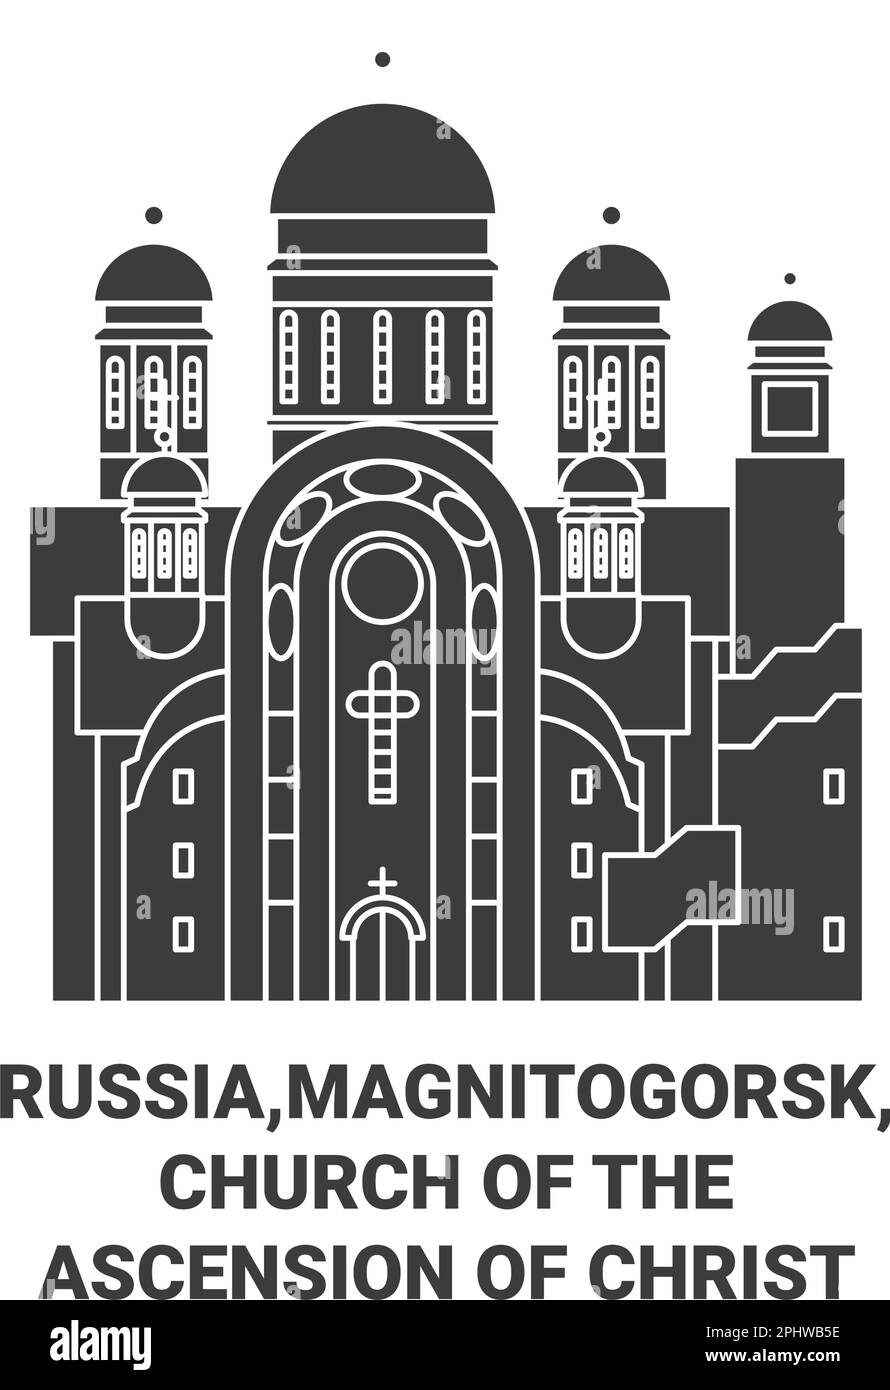 Russie,Magnitogorsk, Église de l'Ascension du Christ Voyage illustration vectorielle Illustration de Vecteur